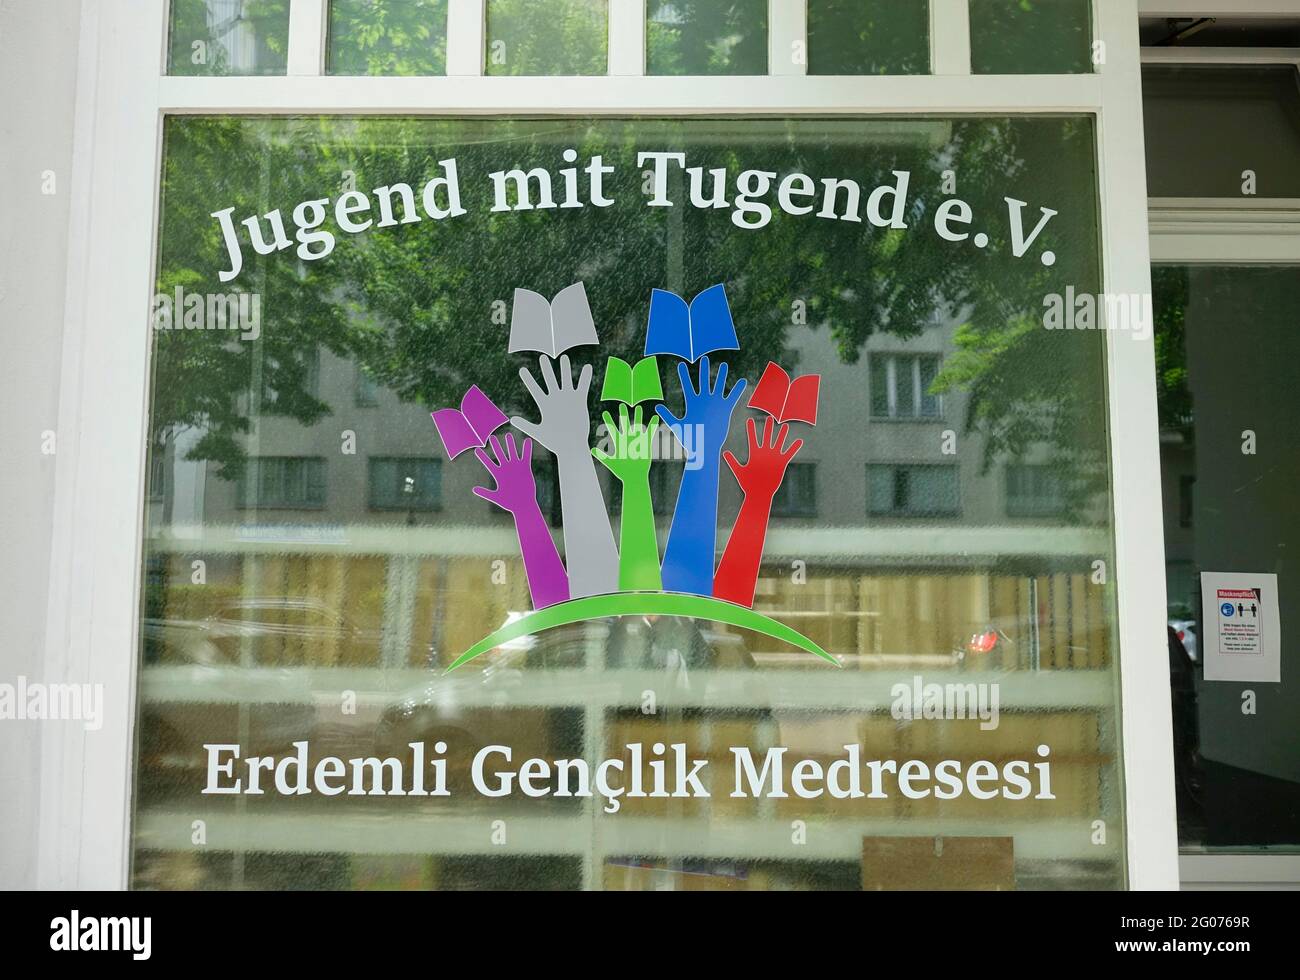 Türkisches Bildungszentrum, Jugend mit Tugendin, Moabit, Berlin Stockfoto